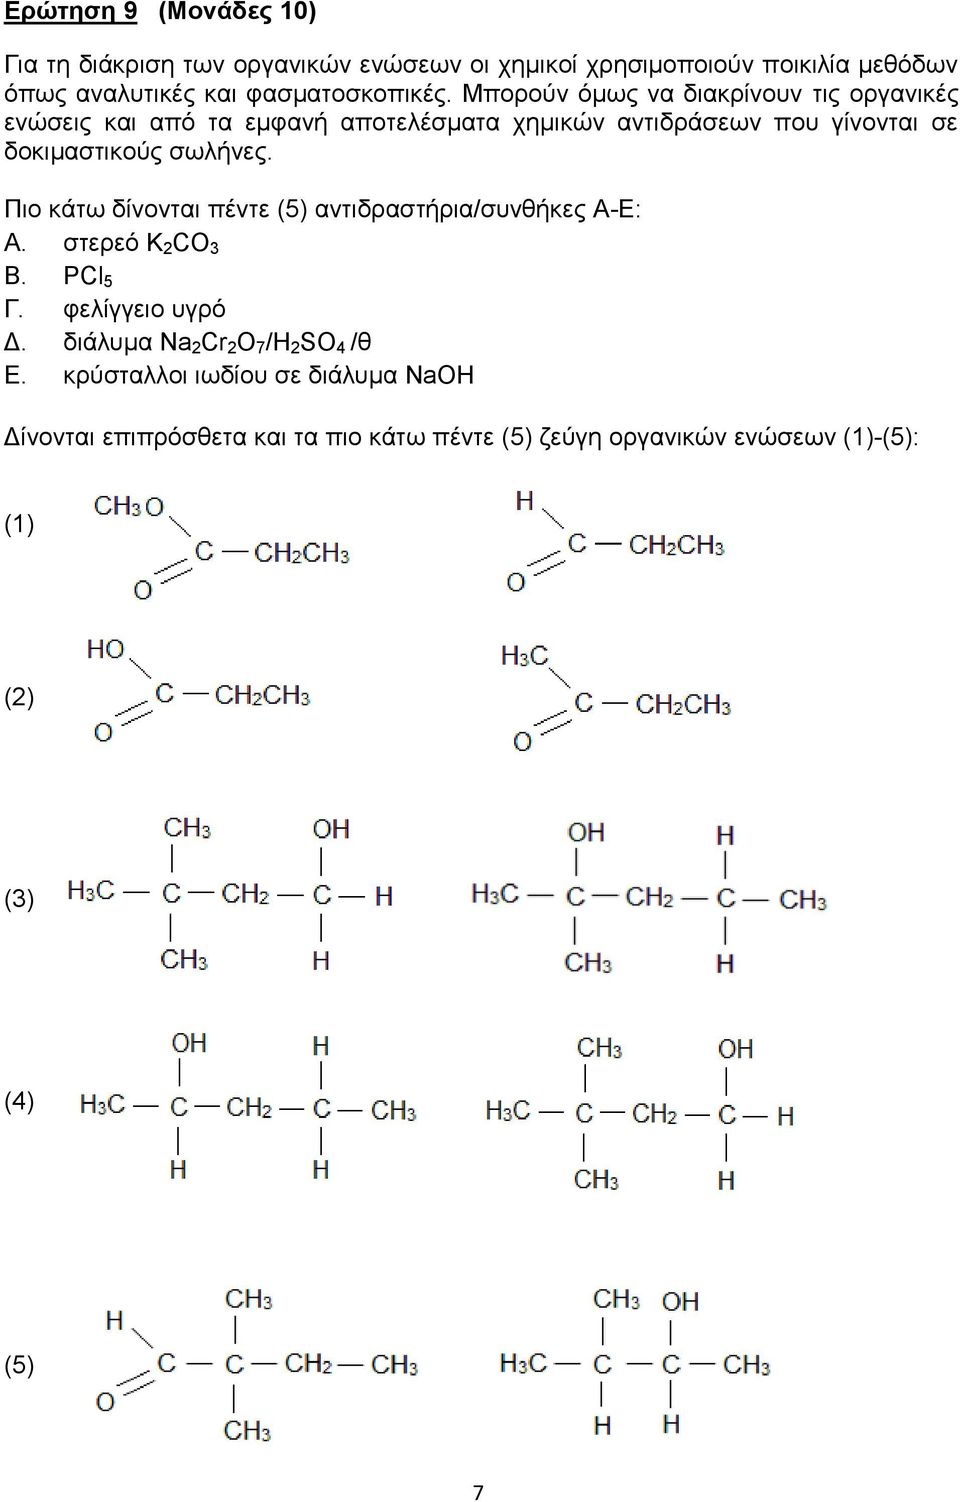 Πιο κάτω δίνονται πέντε (5) αντιδραστήρια/συνθήκες Α-Ε: Α. στερεό Κ 2 CO 3 Β. PCl 5 Γ. φελίγγειο υγρό Δ.